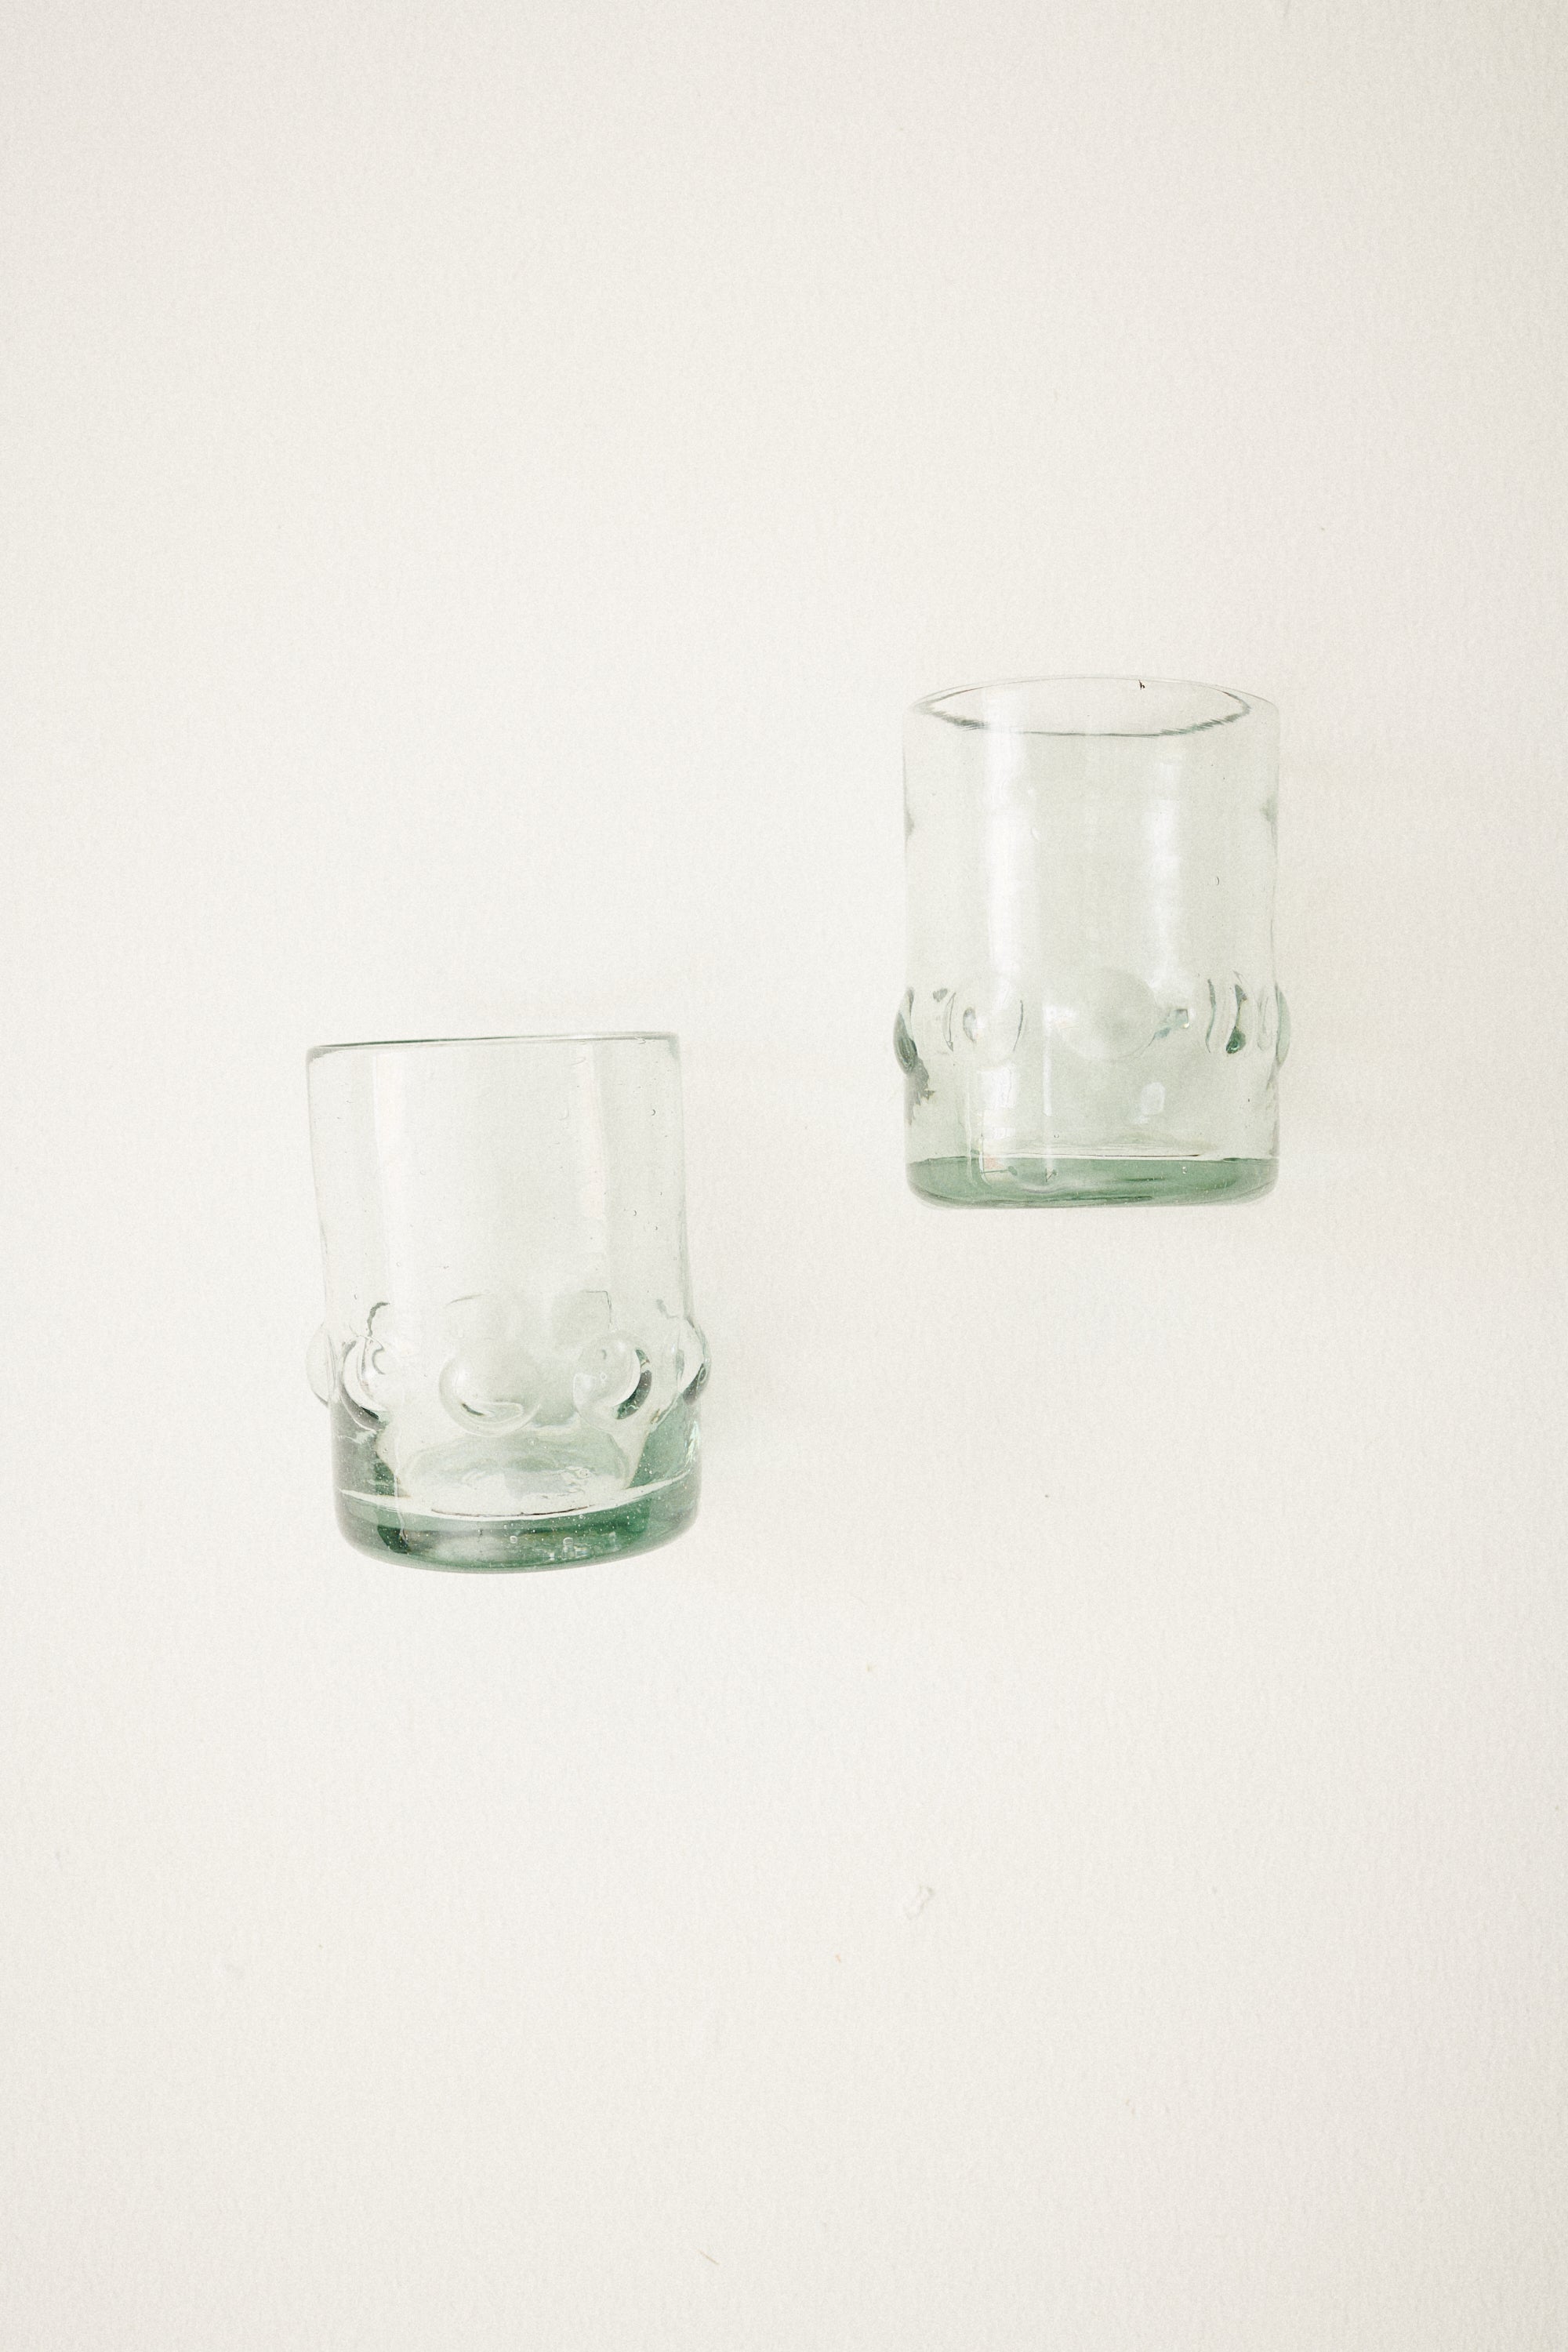 Øgaard Dot Glass Cup - Medium - Desert Vintage